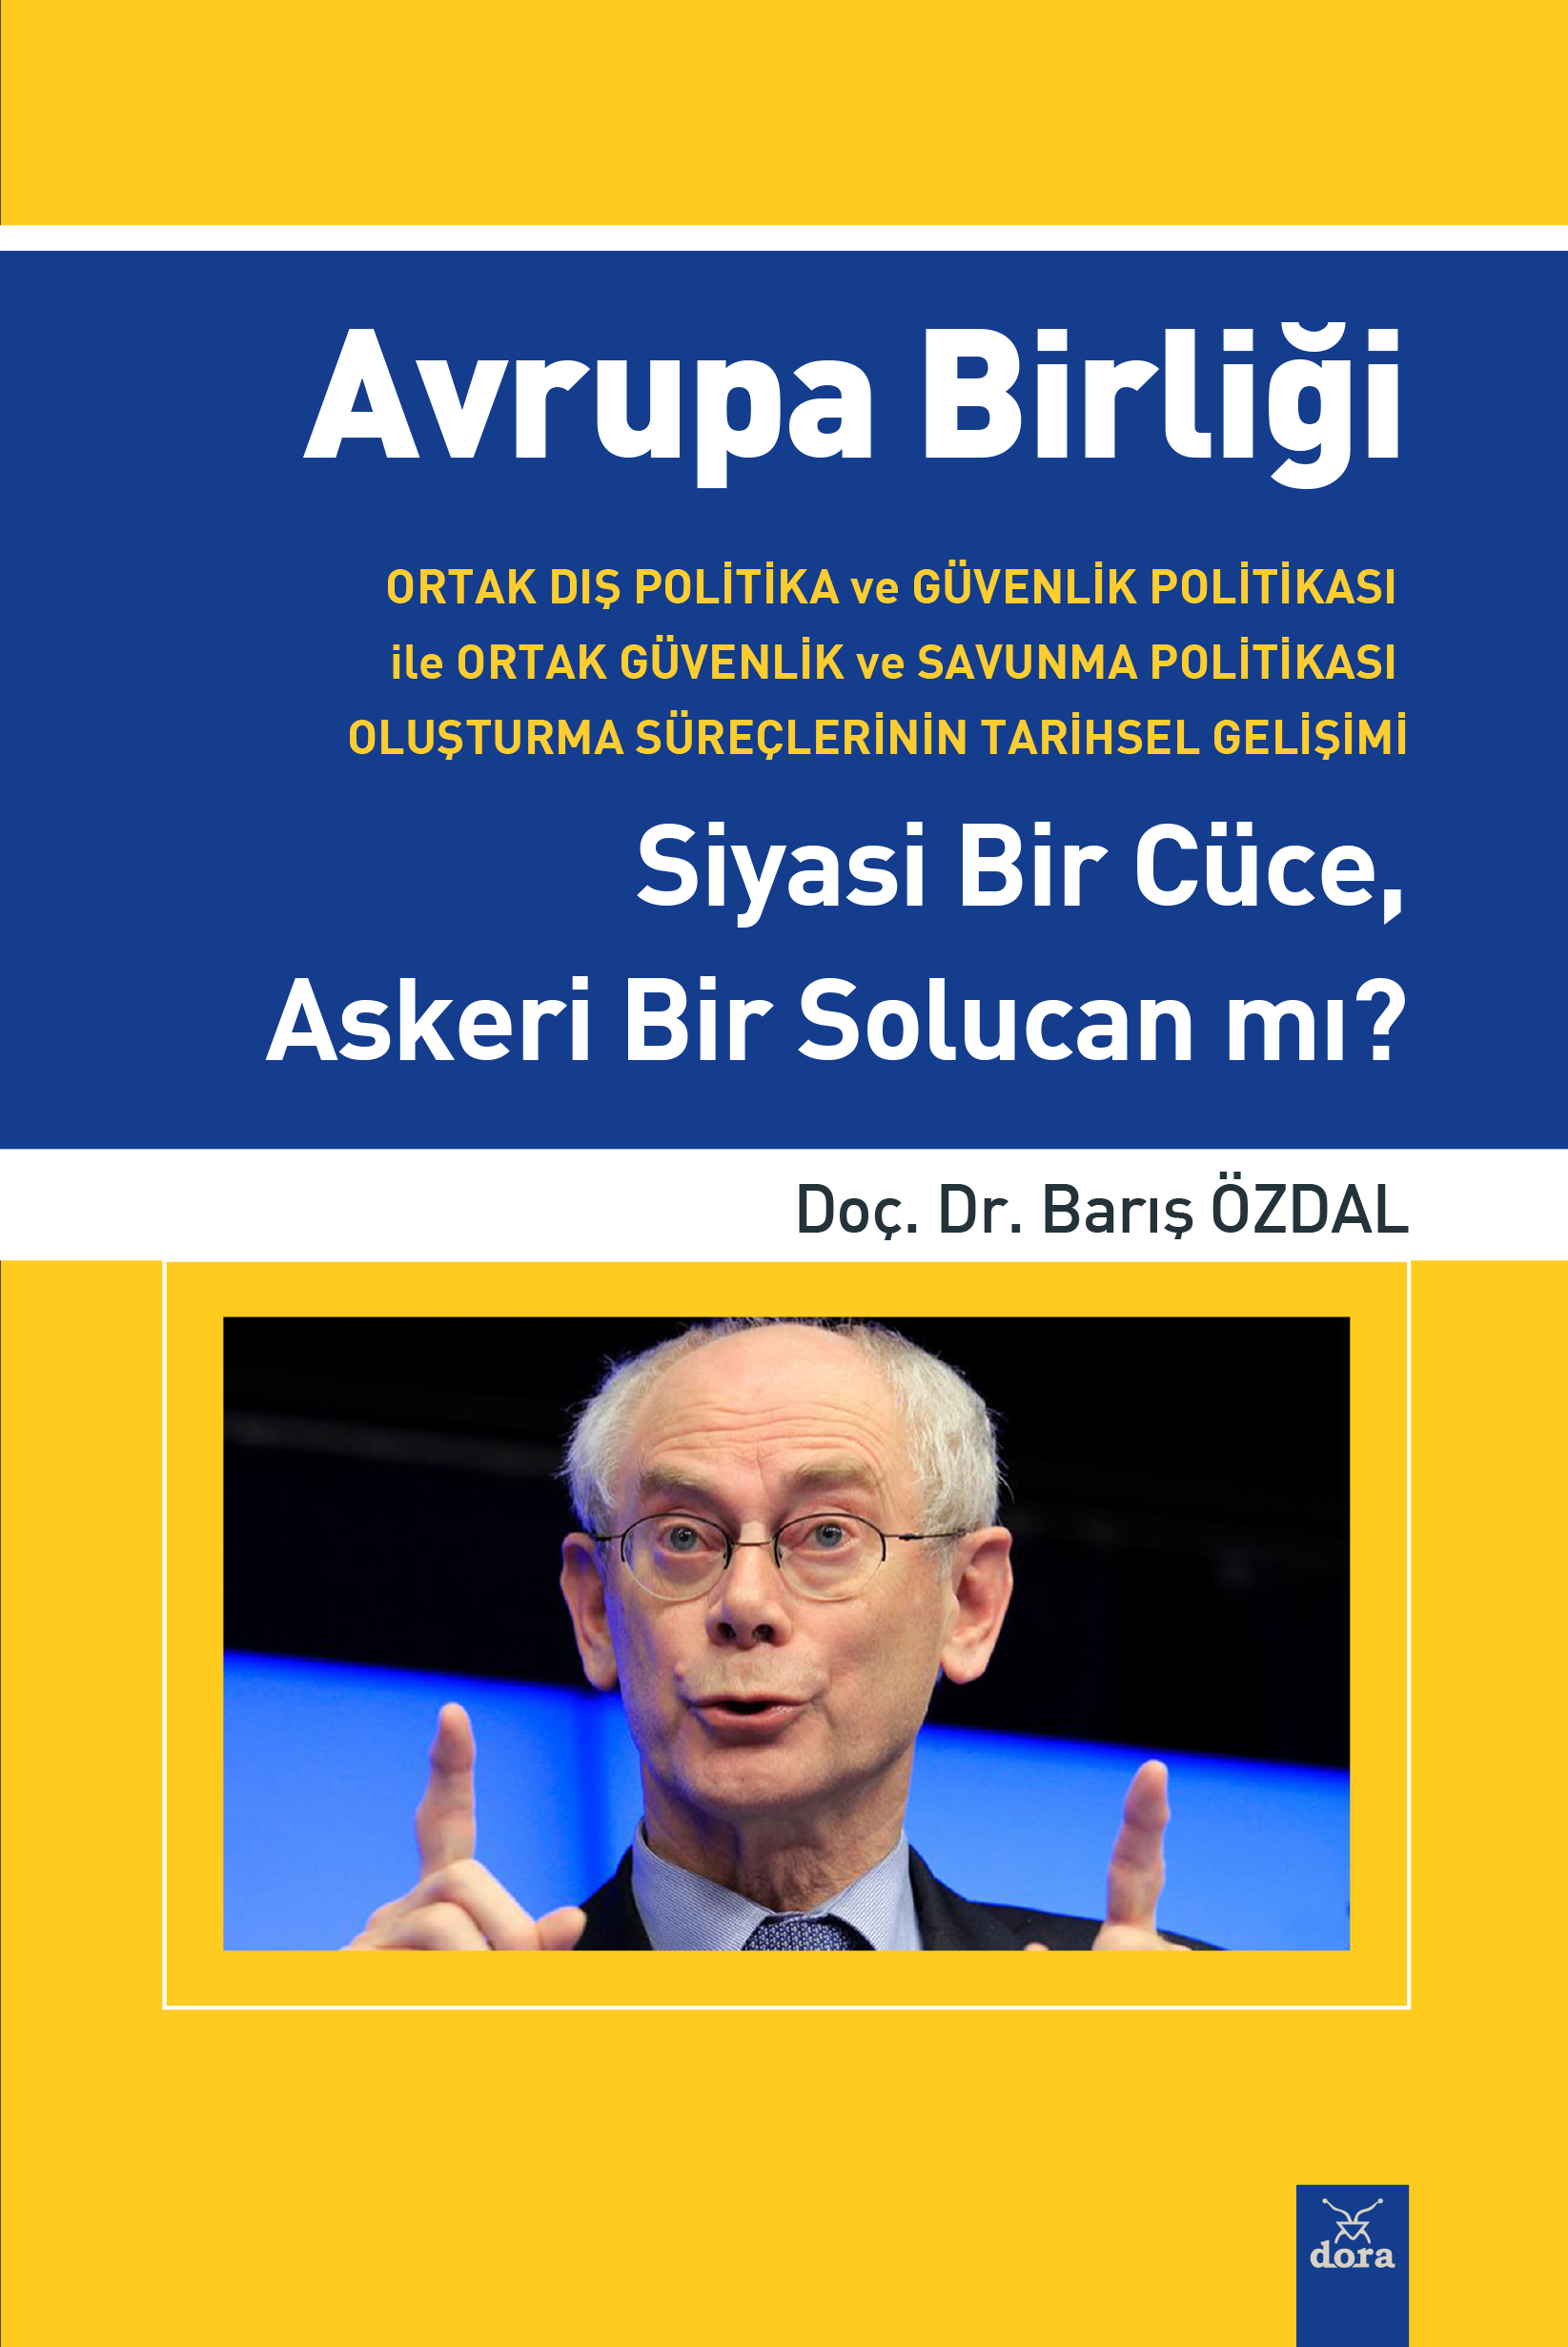 AB ve Türk Hukukunda Reklam Uygulama Esasları  | 524 | Dora Yayıncılık